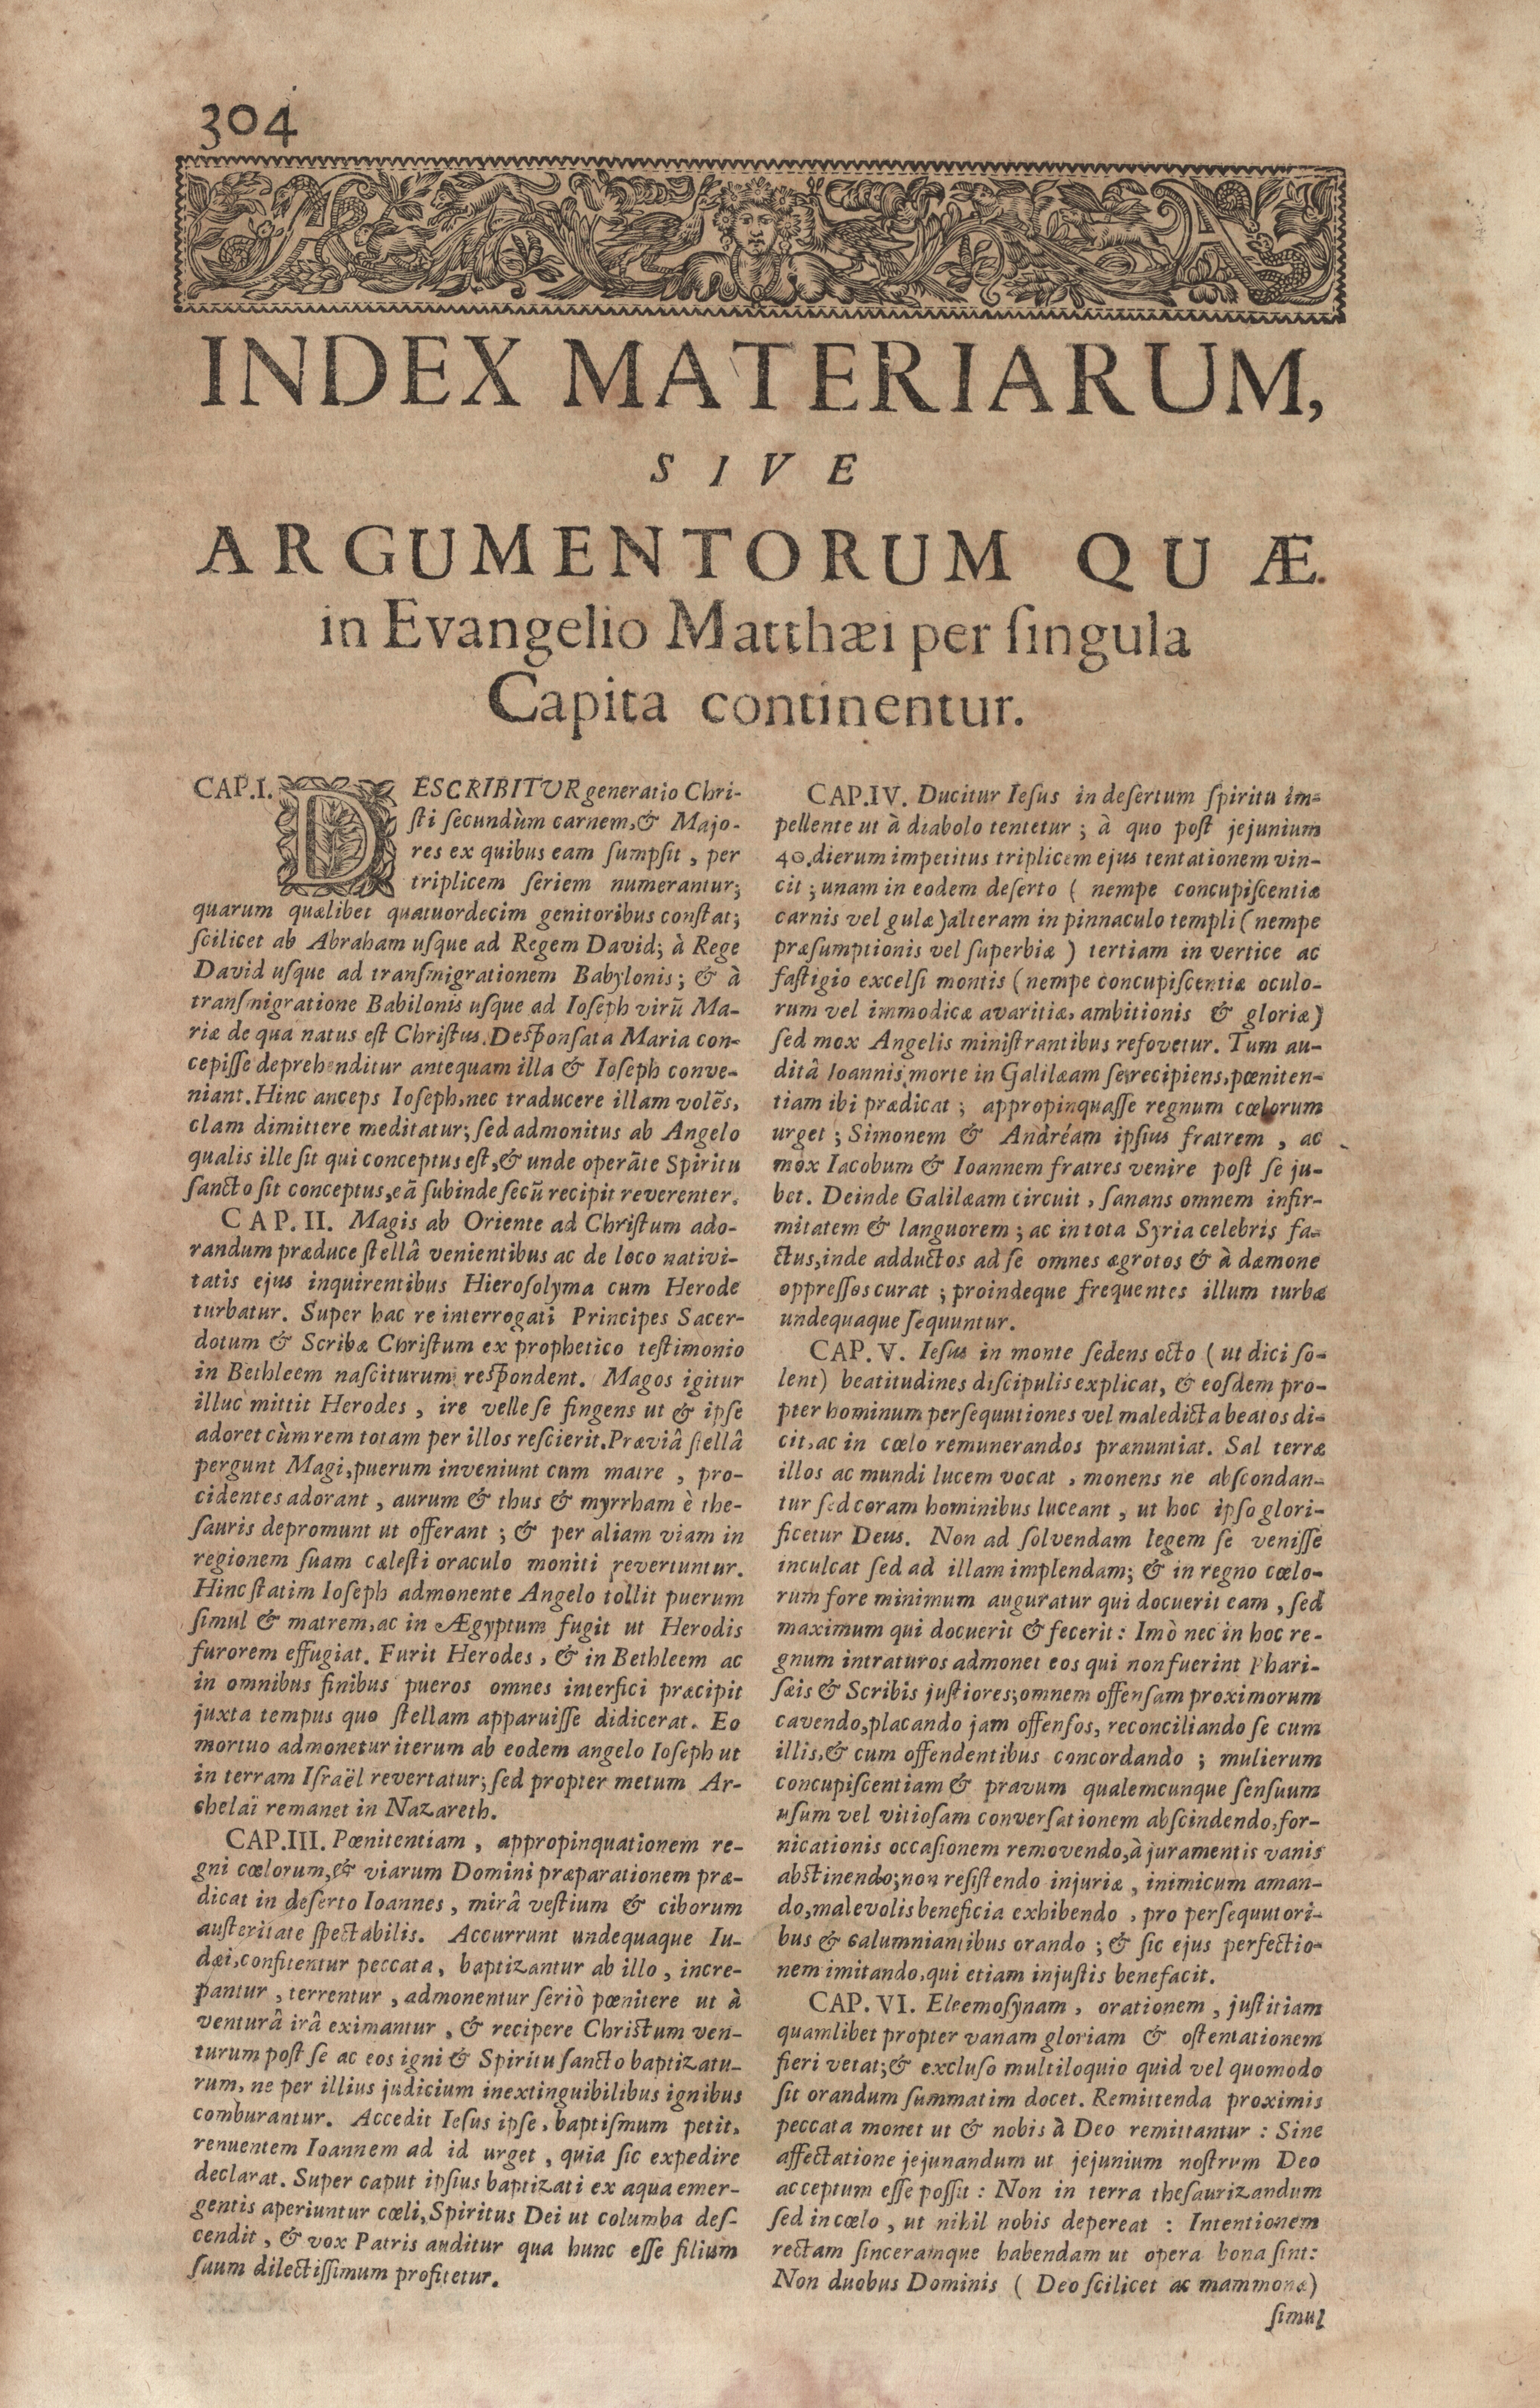 Index materiarum, sive argumentorum quae